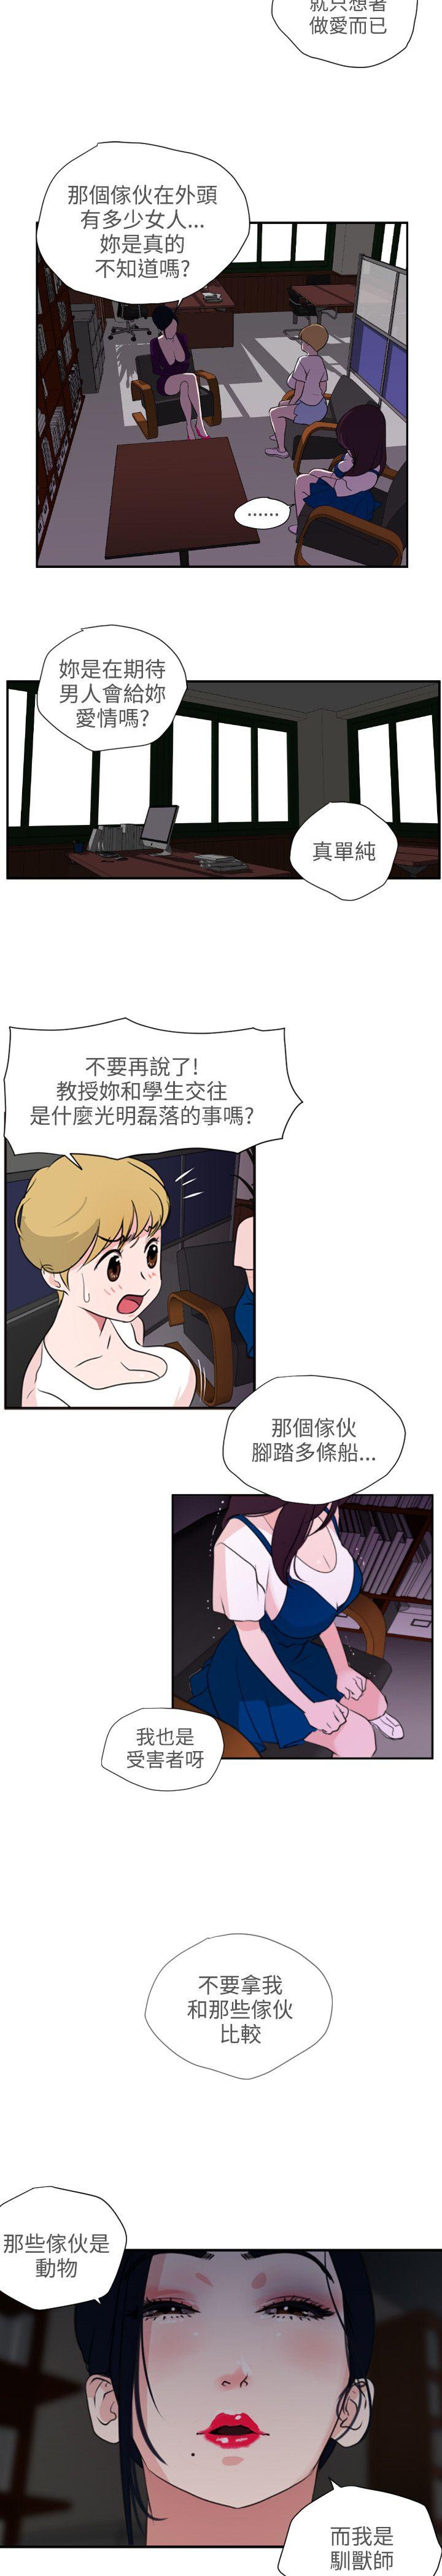 韩国污漫画 欲求王 第2话 33